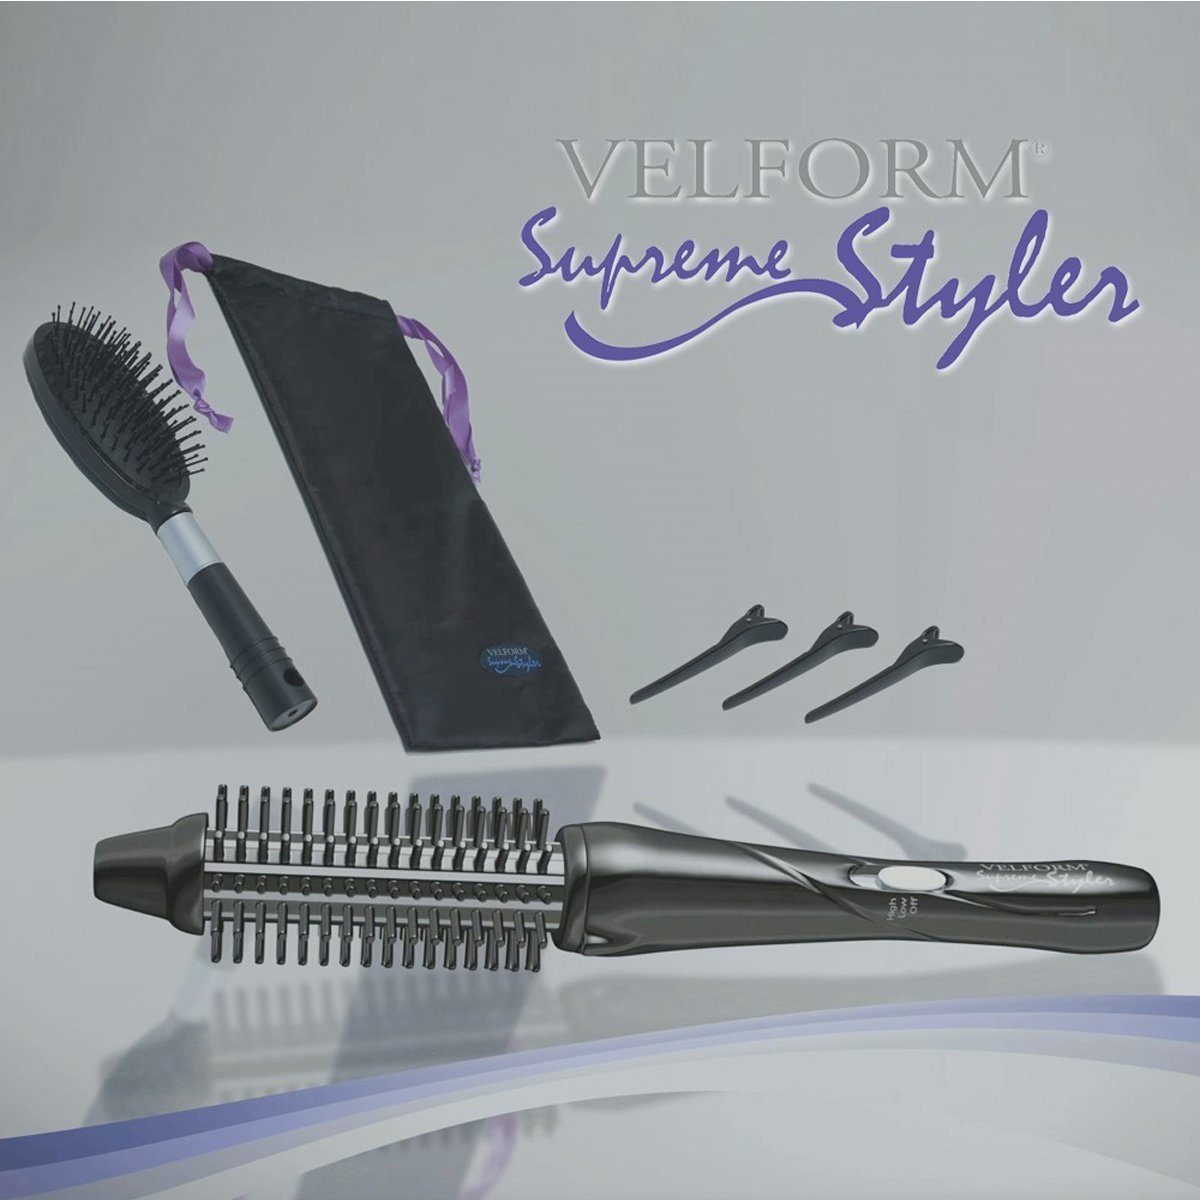 1 Multifunktions-Thermobürste 4 Velform®️ Supreme Styler, mit Ionen-Technologie Haarglättbürste Velform® in